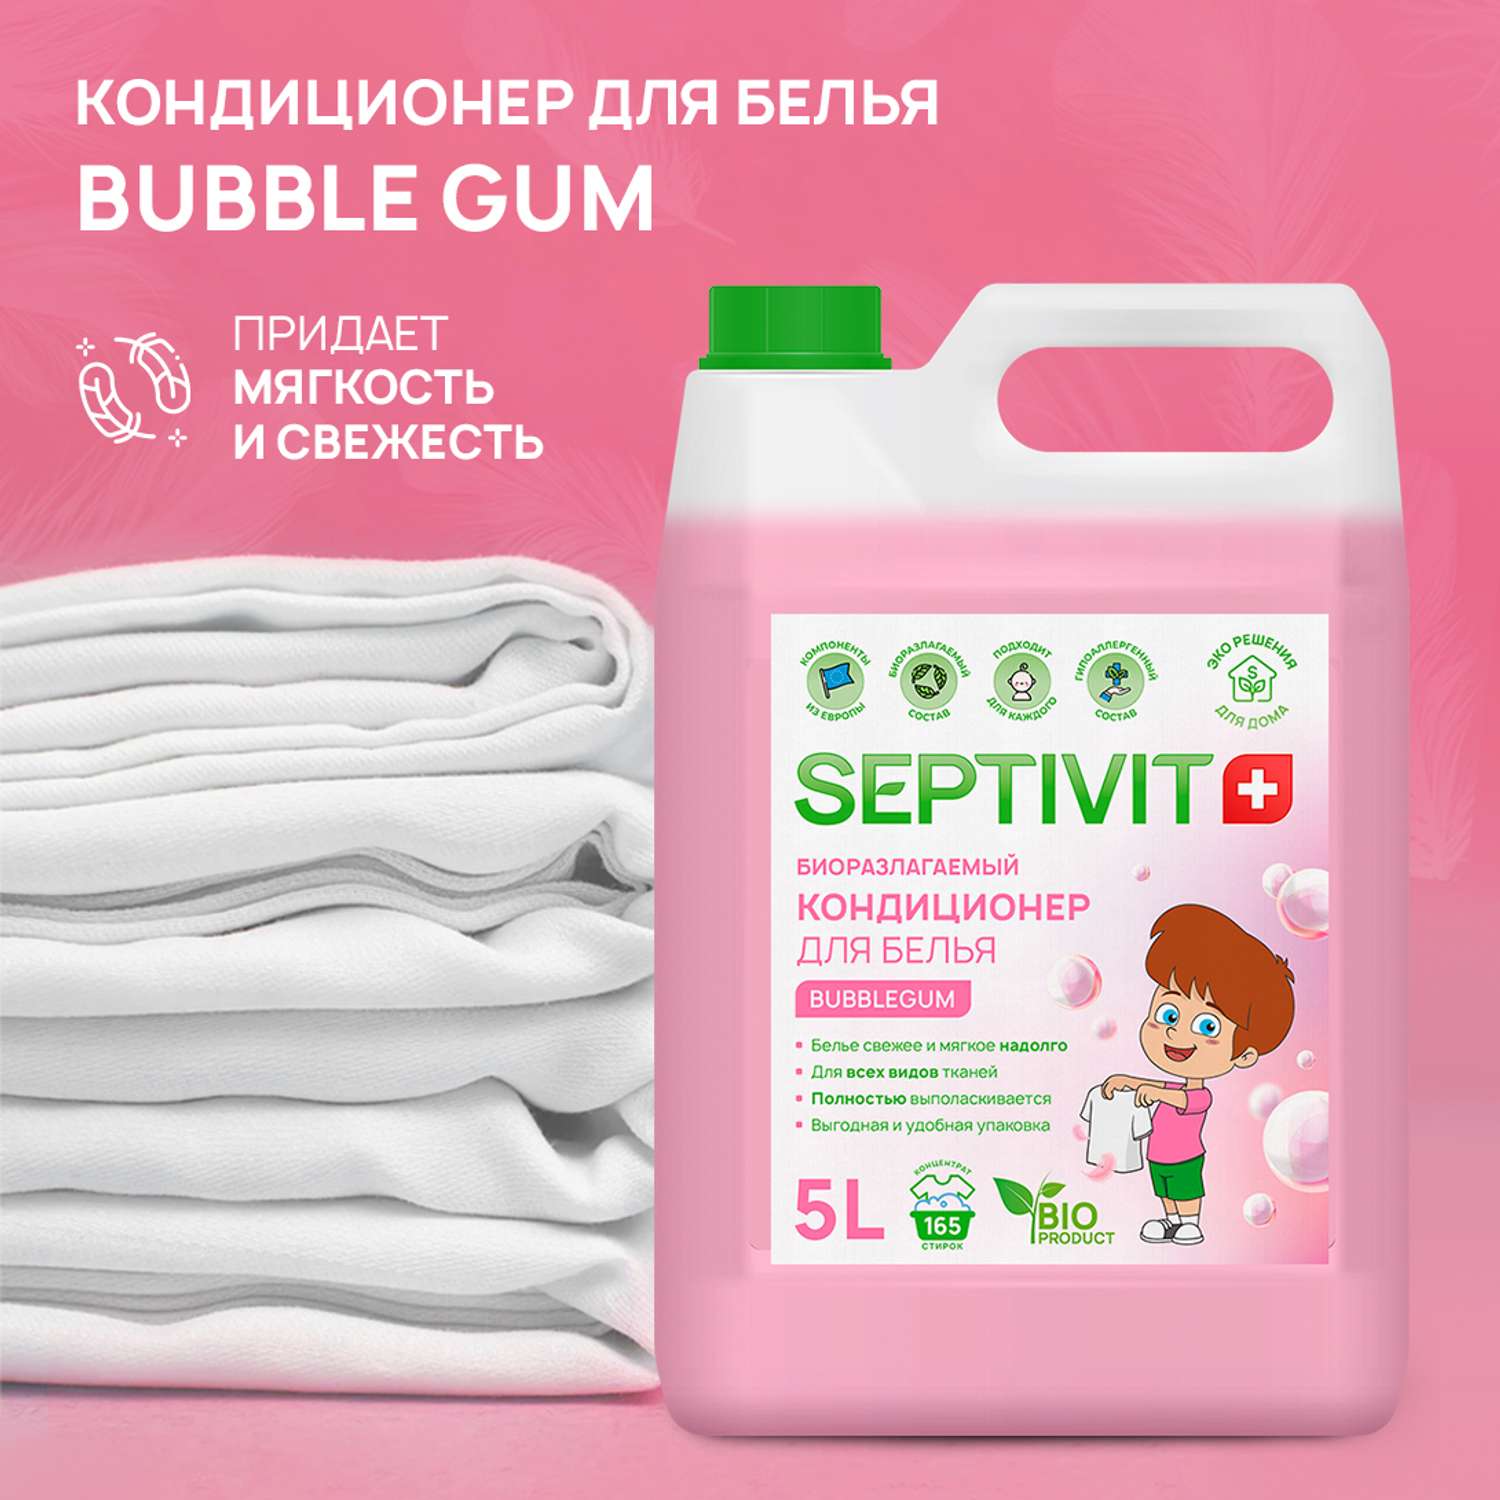 Кондиционер для белья SEPTIVIT Premium 5л с ароматом Bubble gum - фото 3